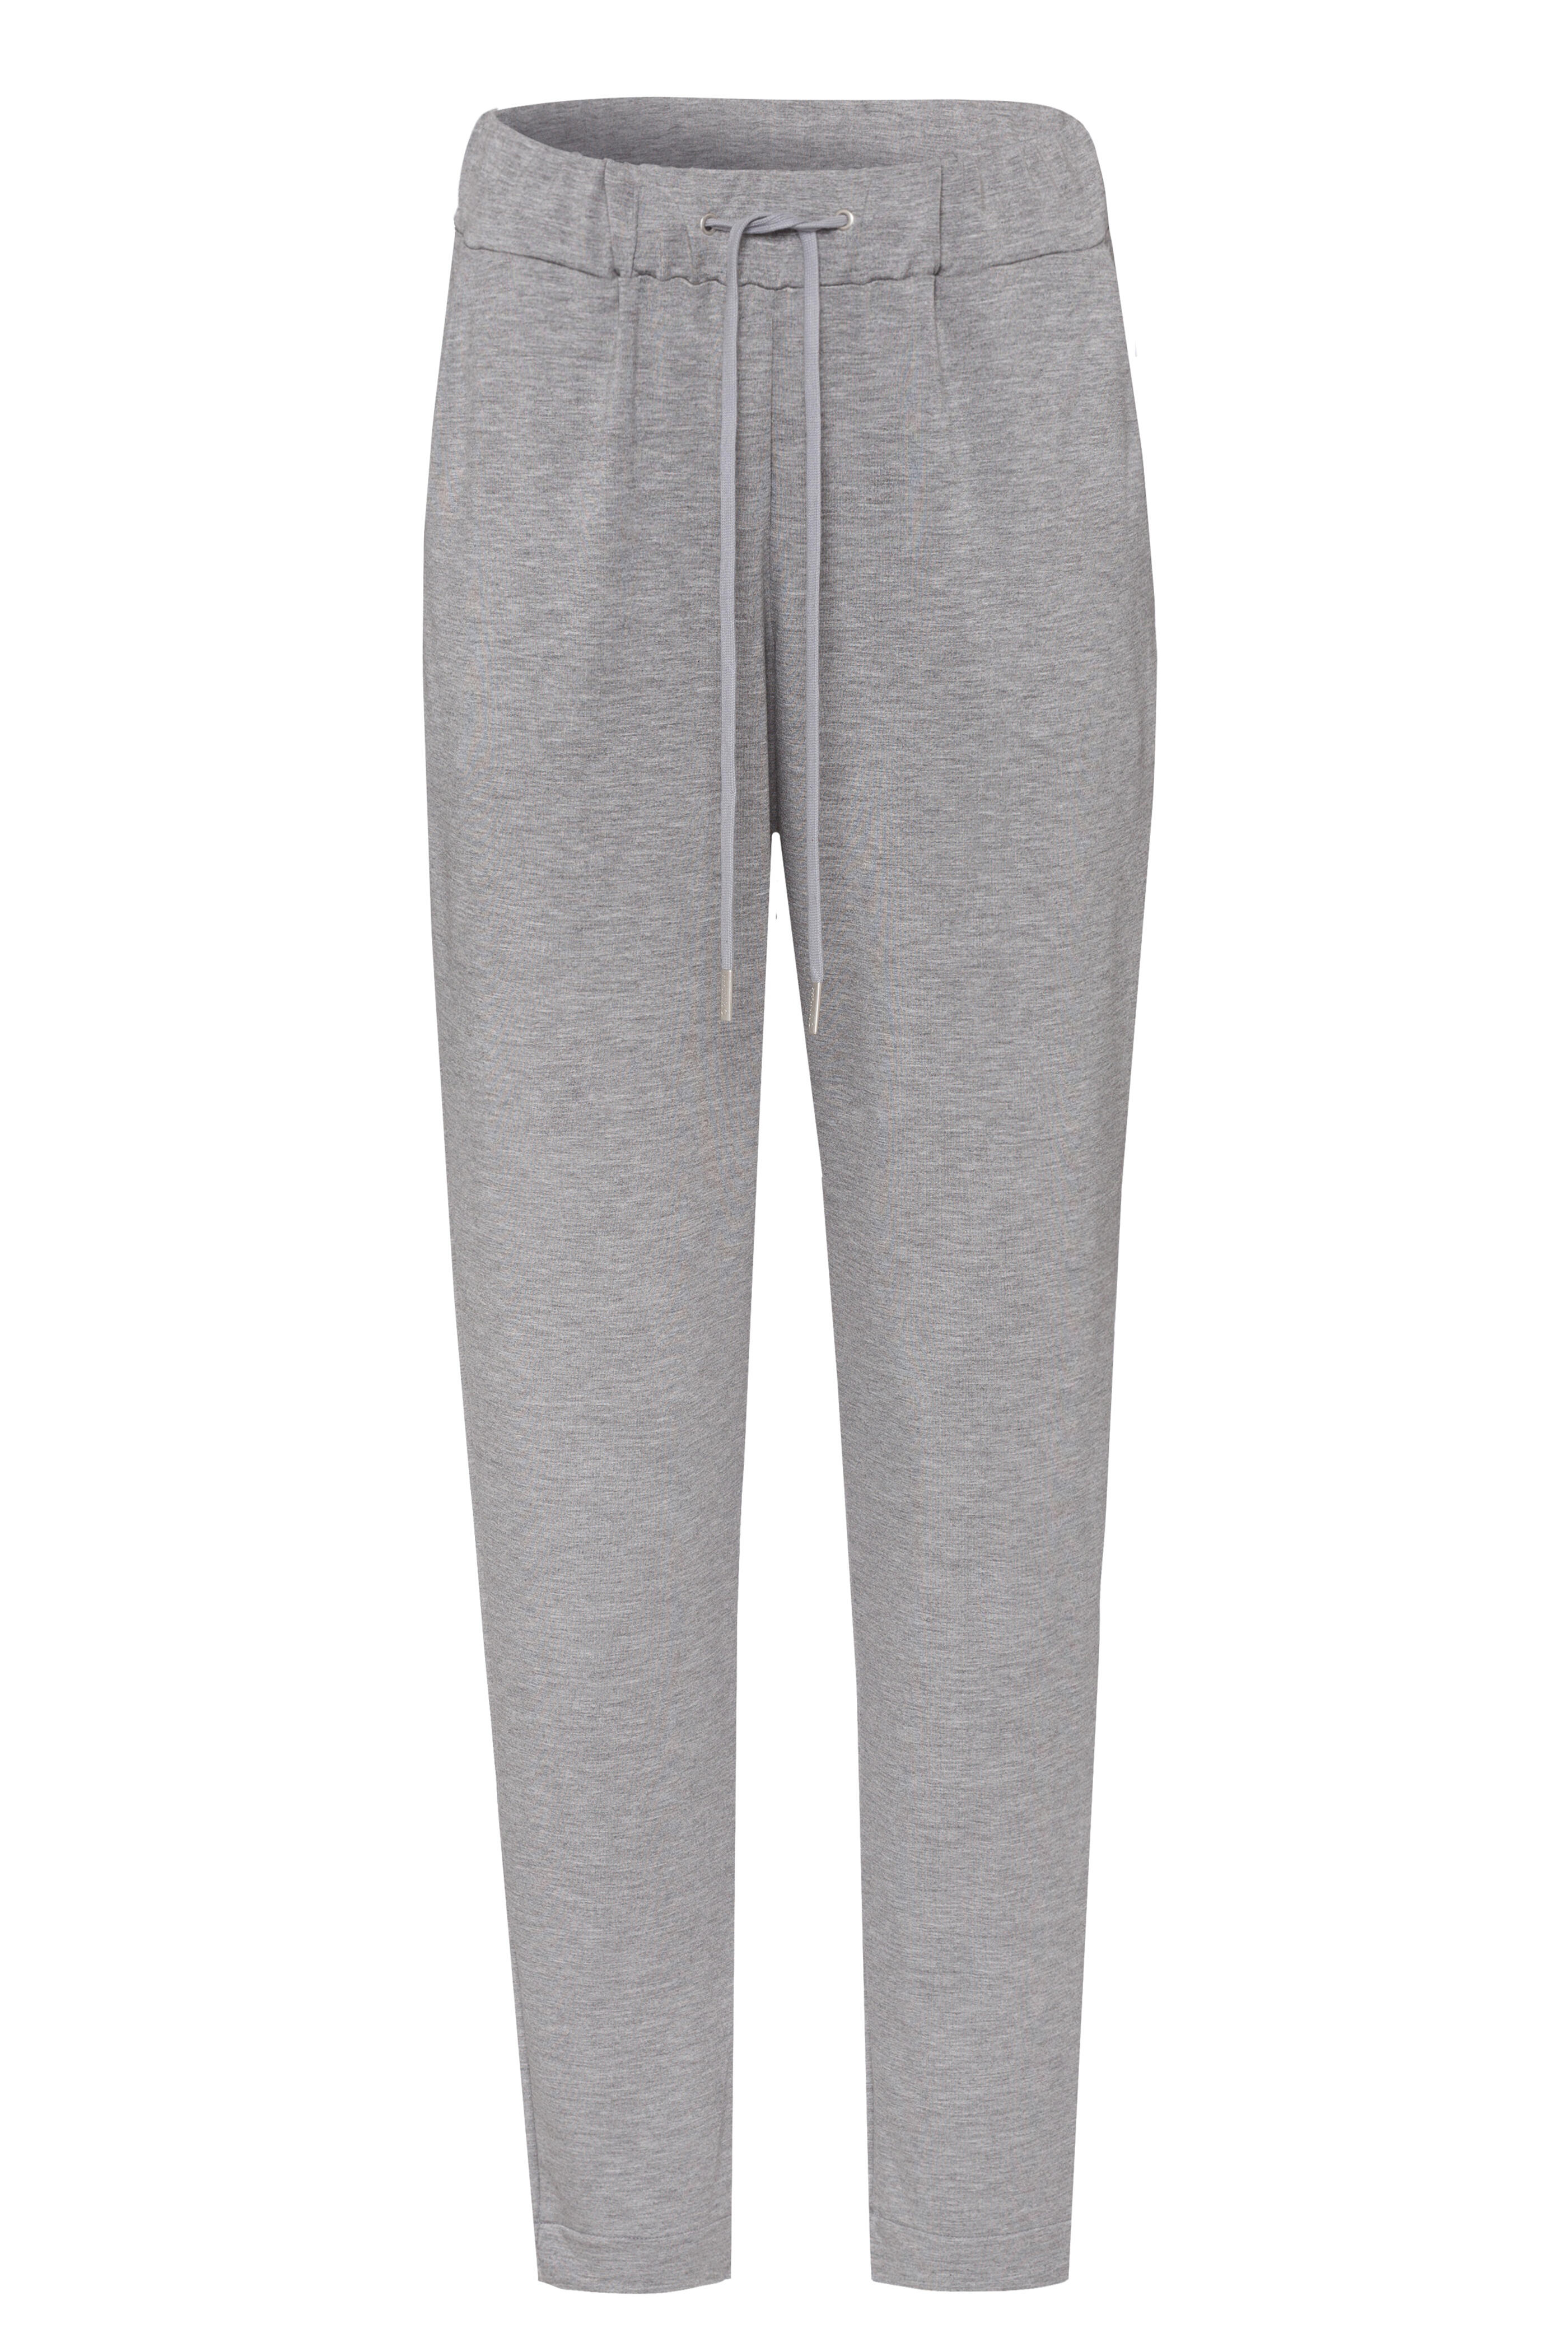 Hanro - Grey Balance Long Pant | Mitchell Stores